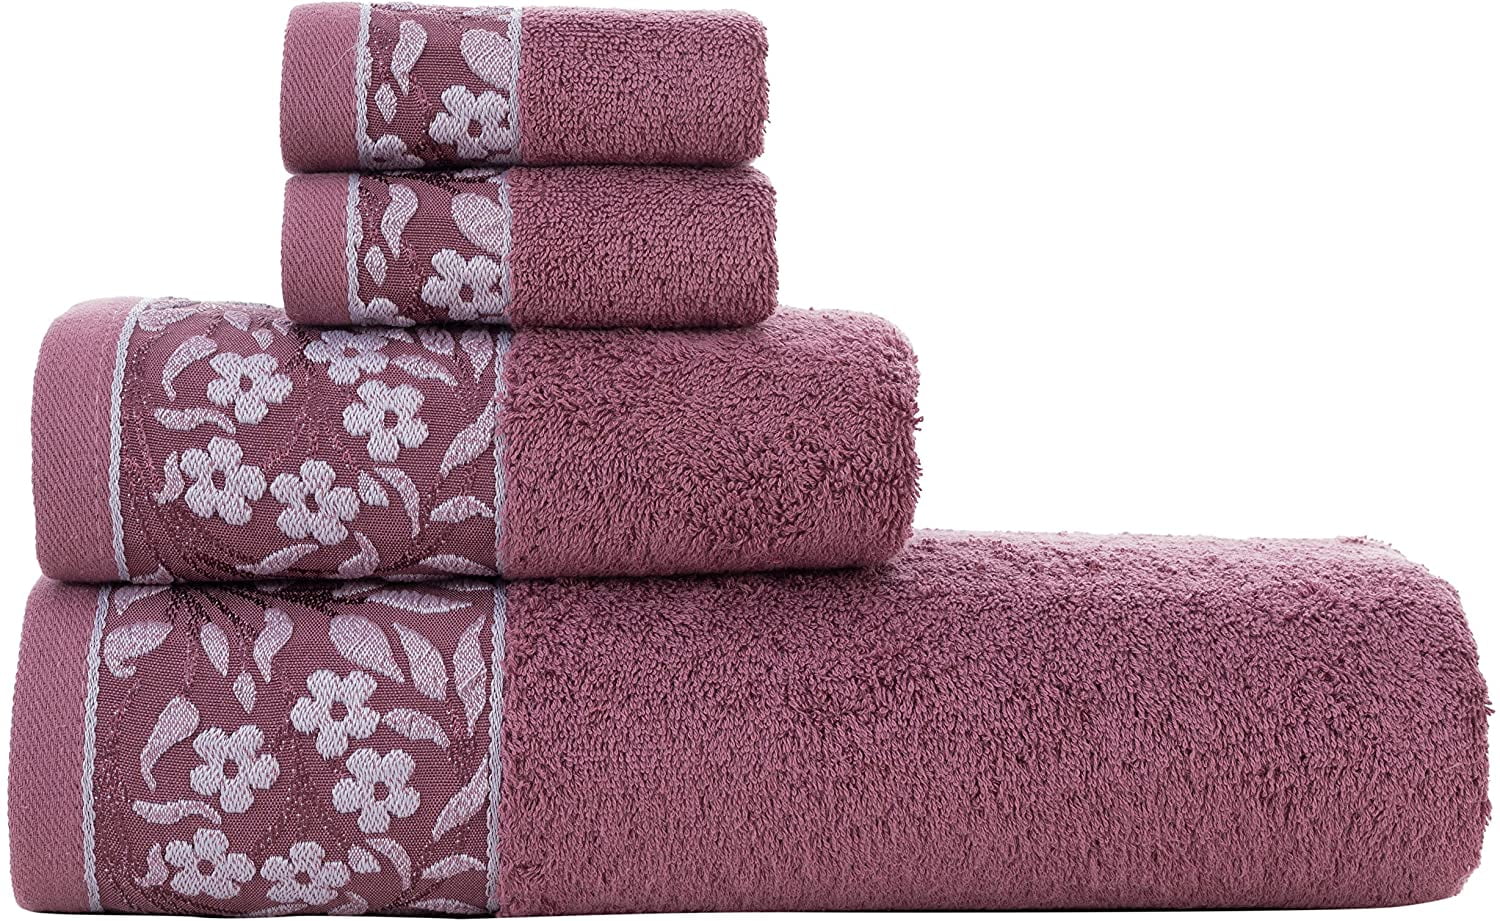 4-Piece Bath Towels Set for Bathroom100% Soft Cotton Turkish Towels Plum 